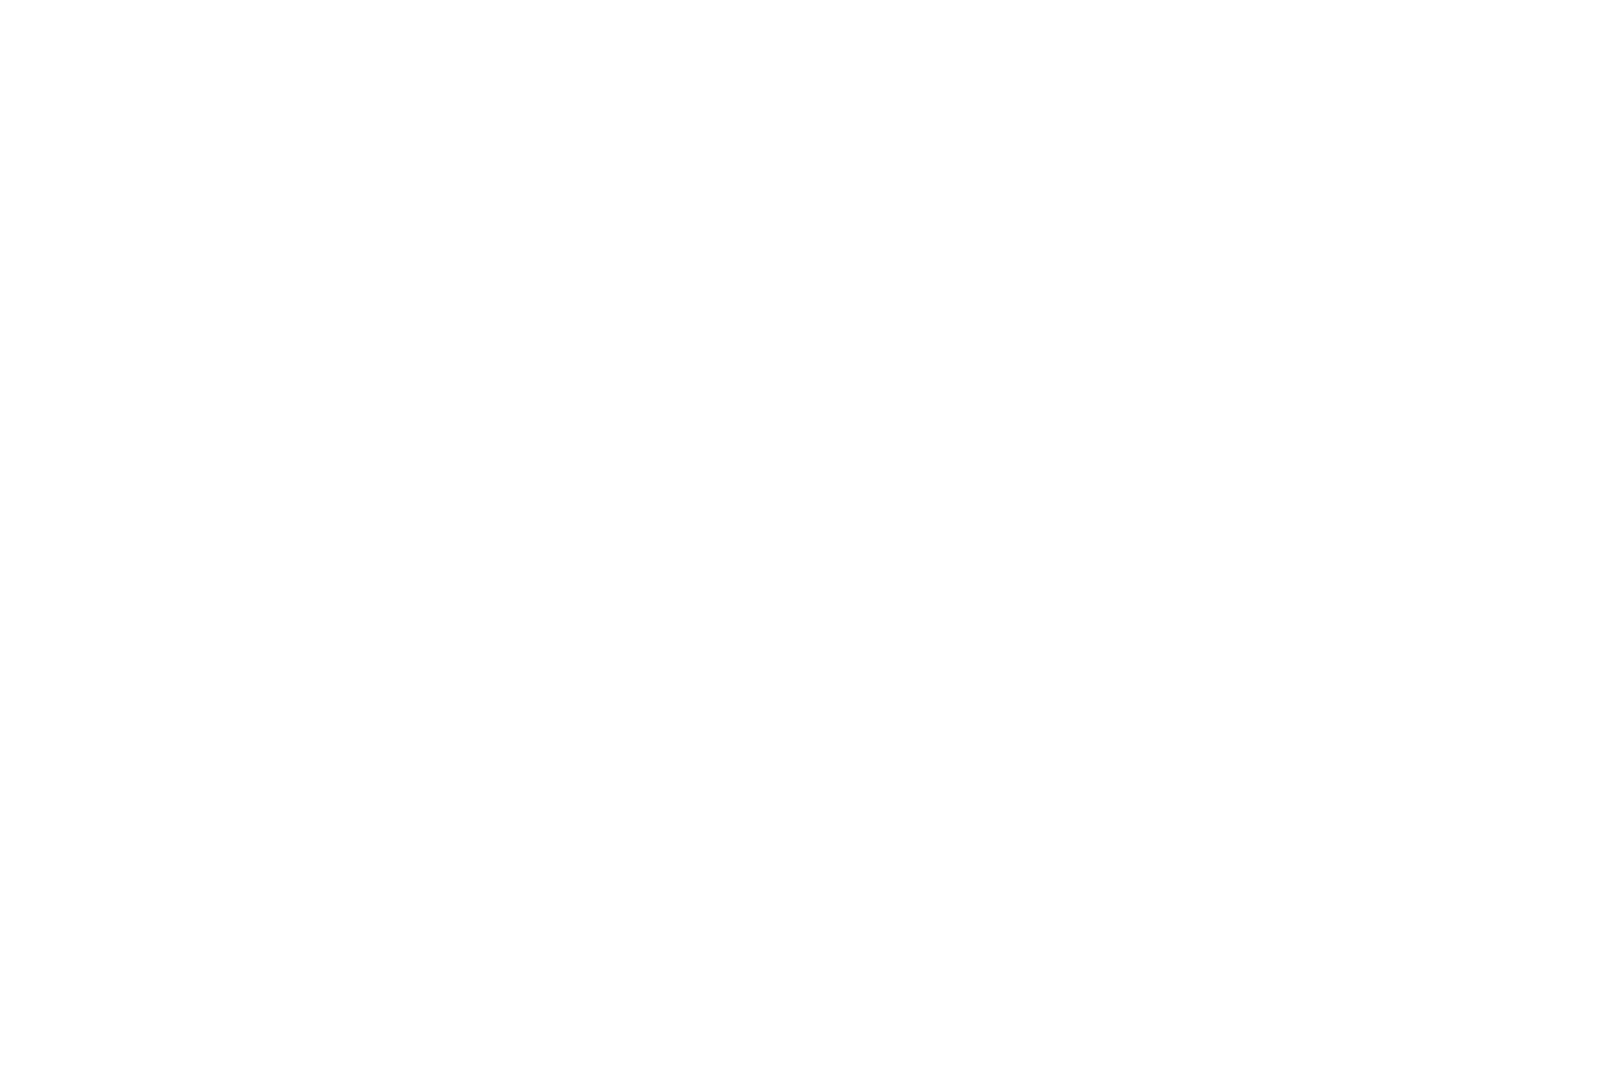 Ac n wilson success Life Coach logo.